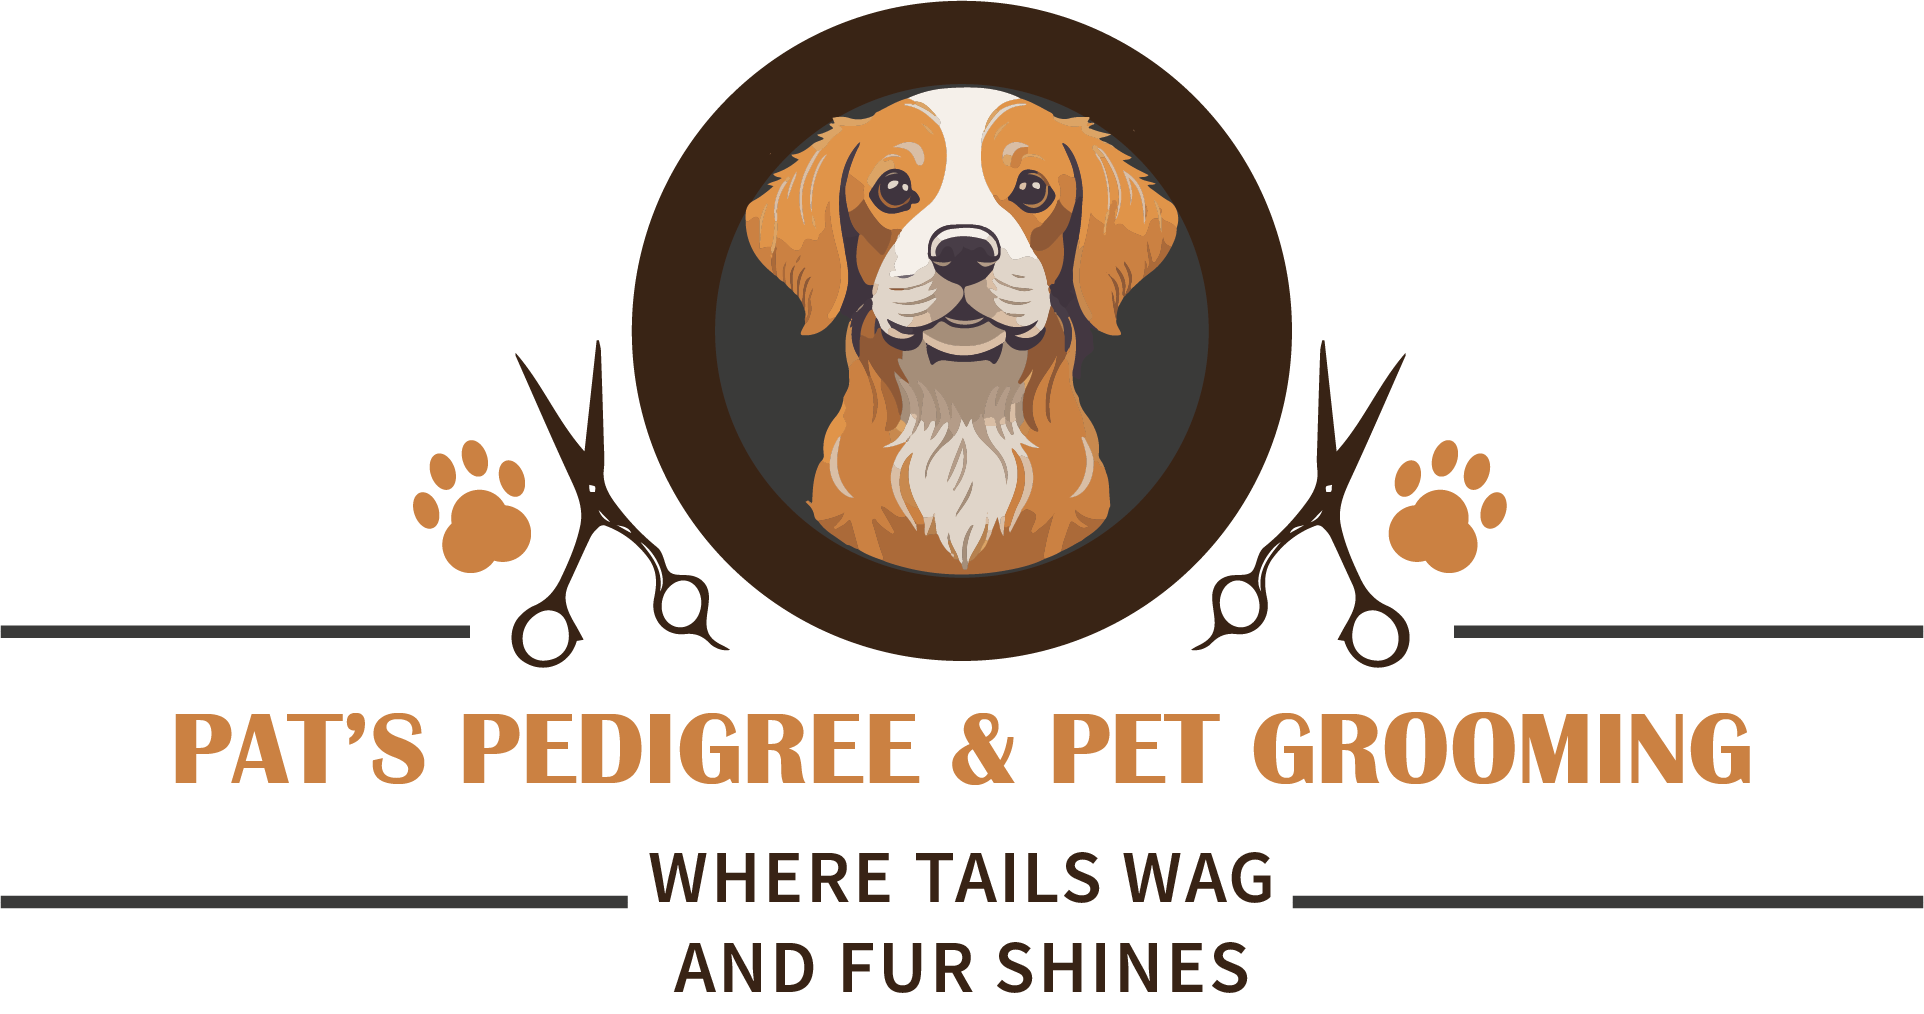 Pat's Pedigree & Pet Grooming